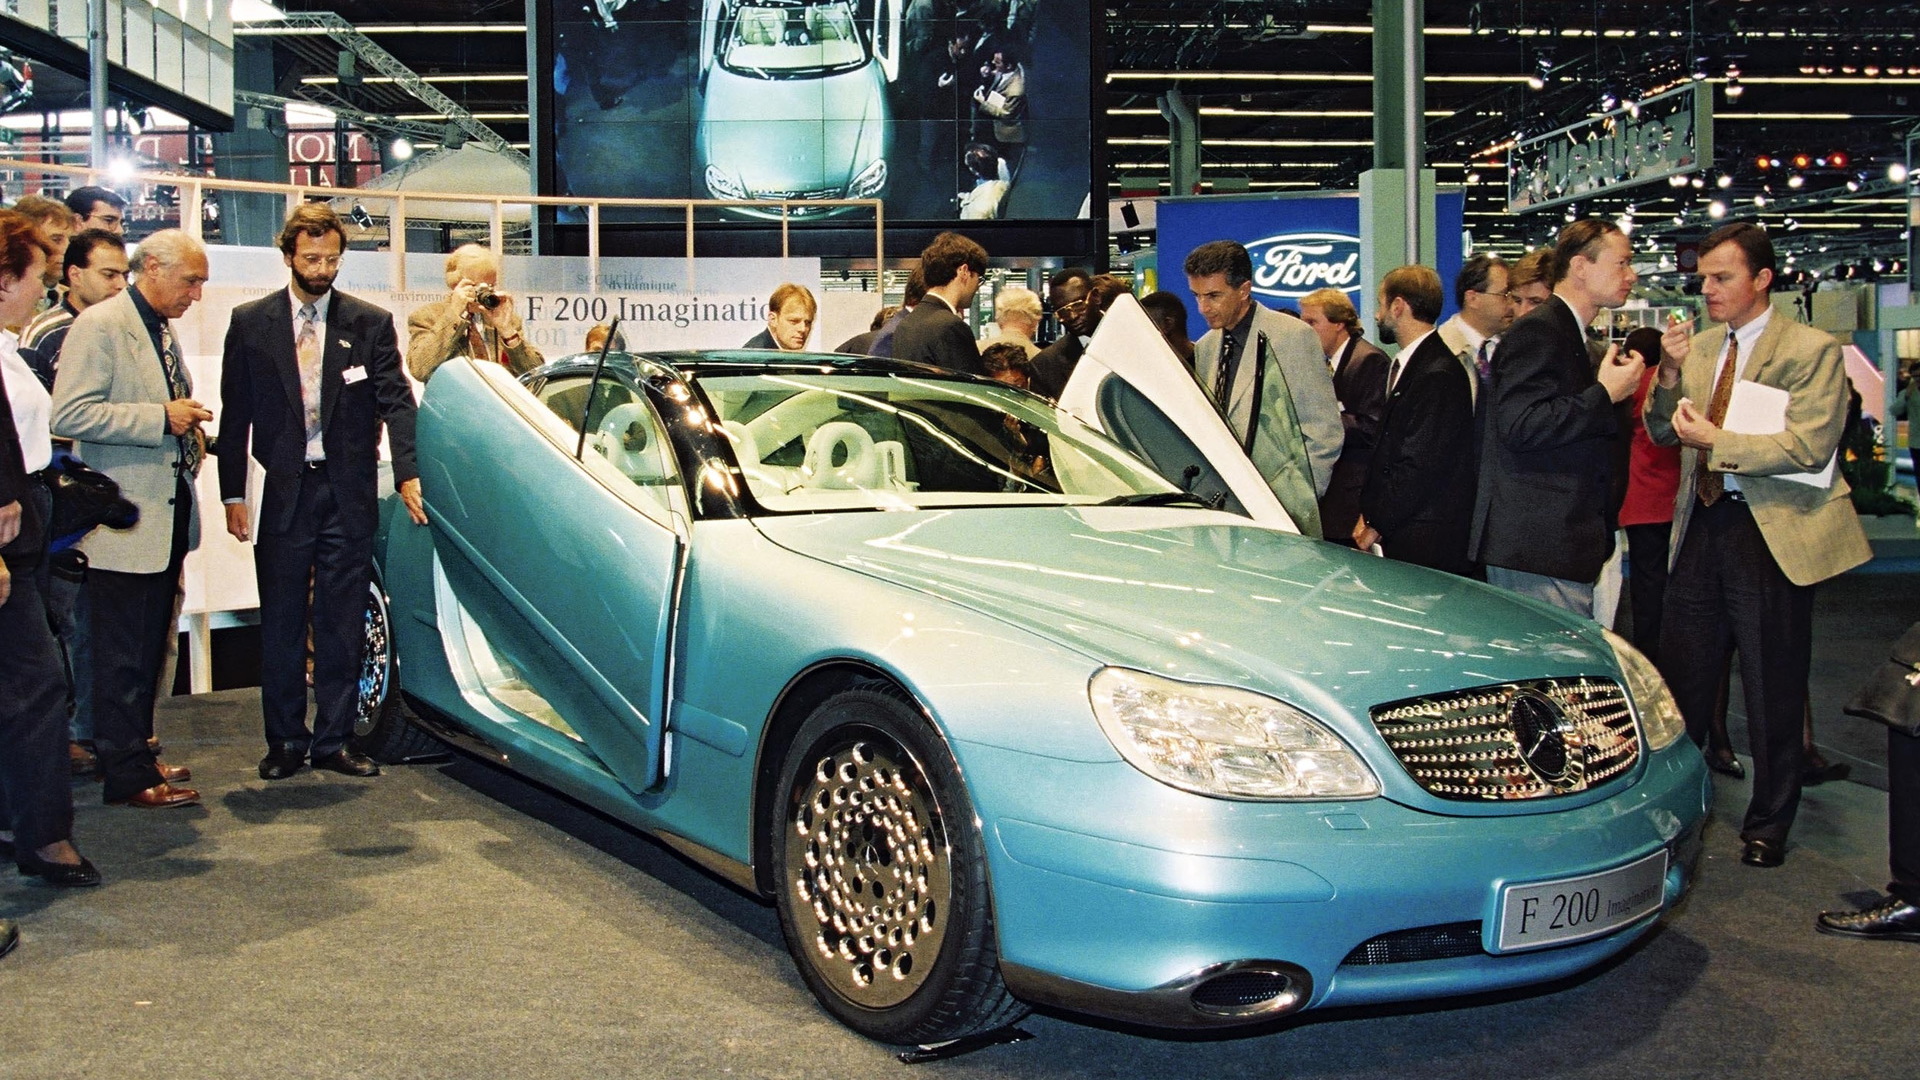 Mercedes-Benz F200 Imagination concept